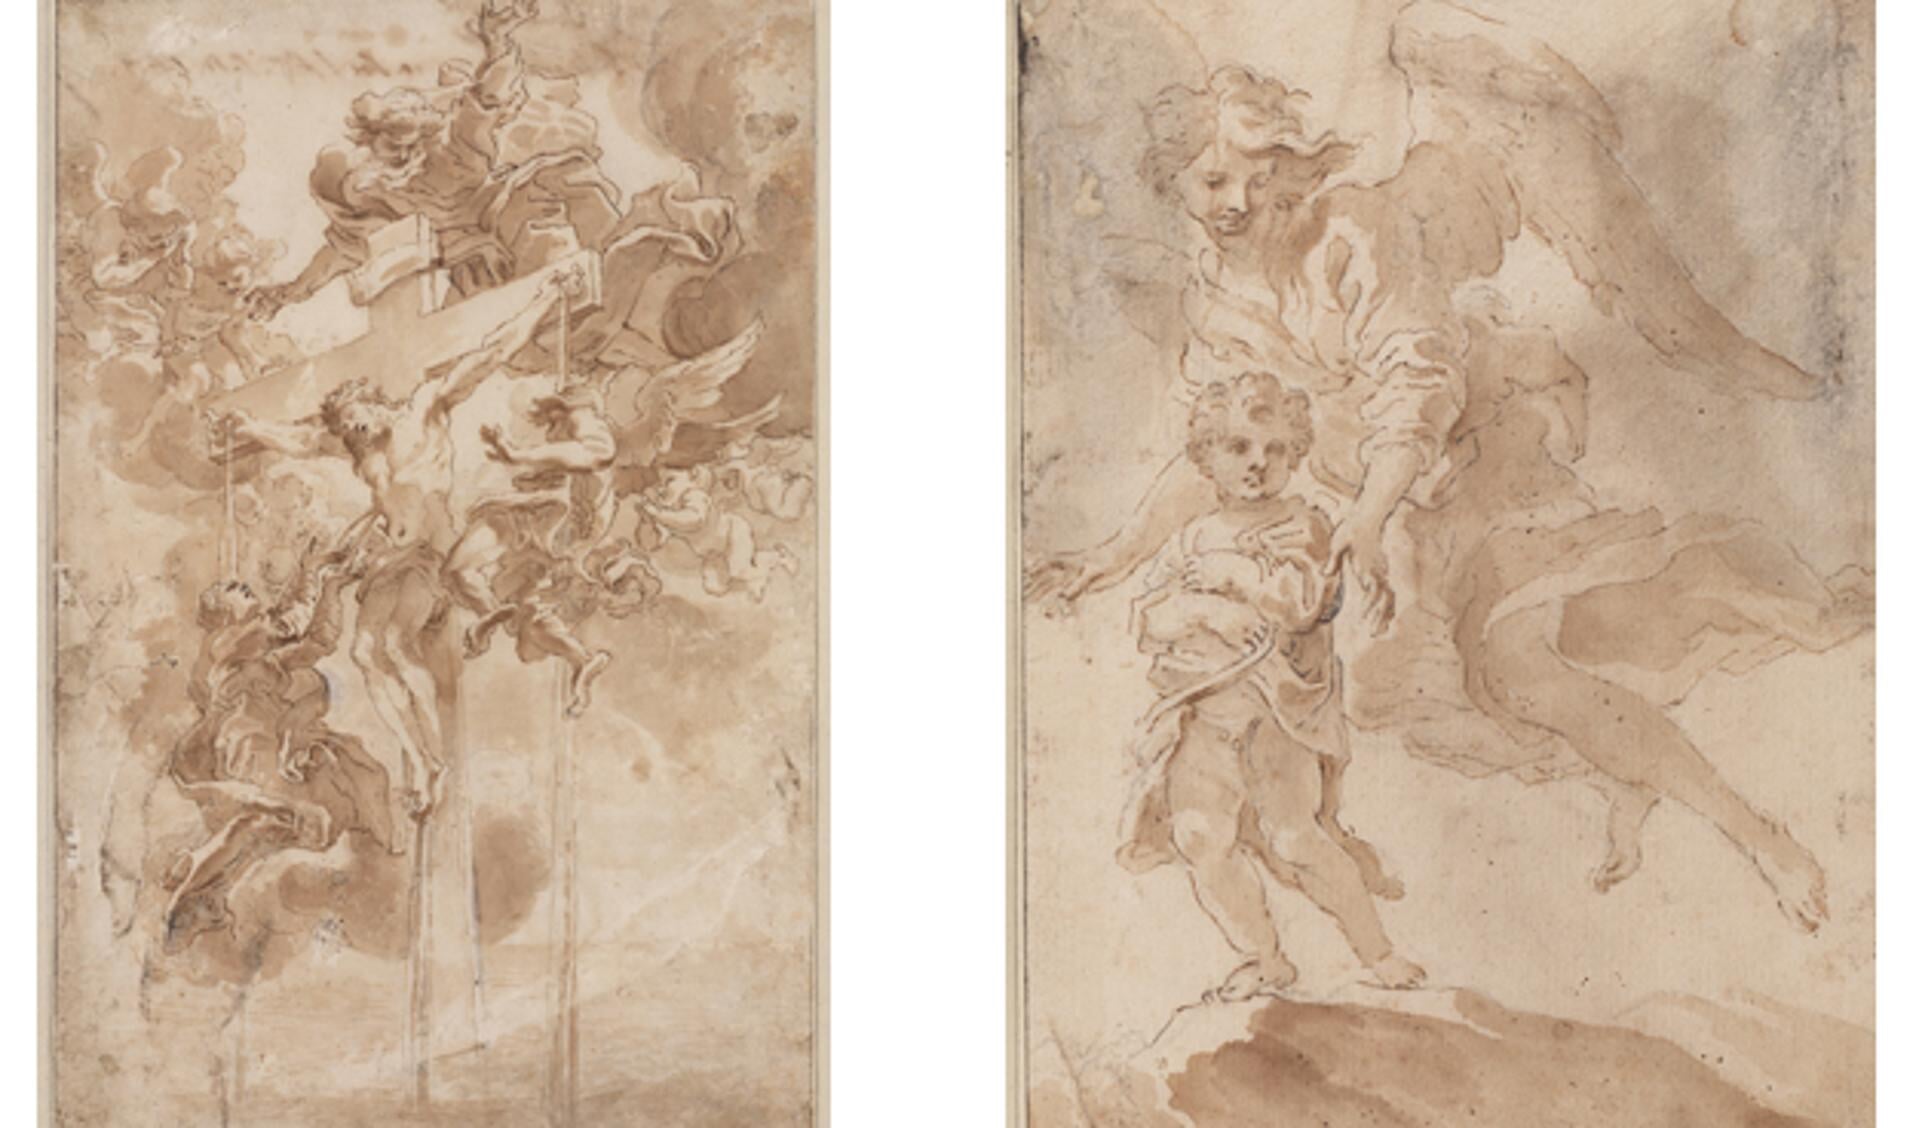 Teylers is twee tekeningen van Bernini rijker.